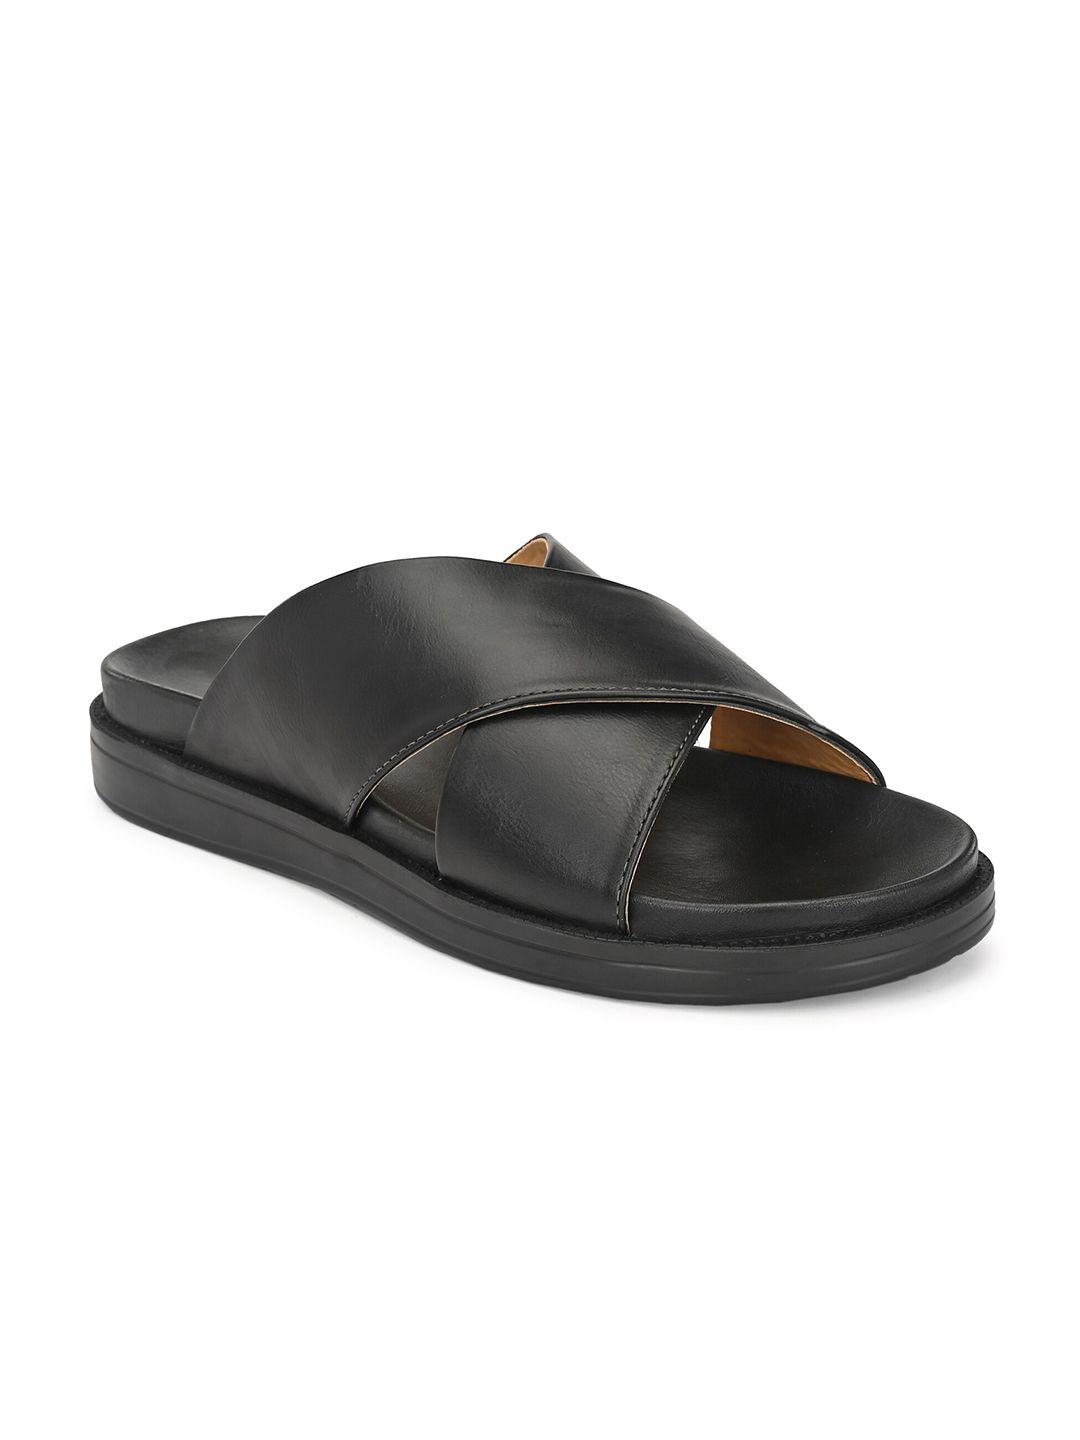 eego italy men black comfort sandals